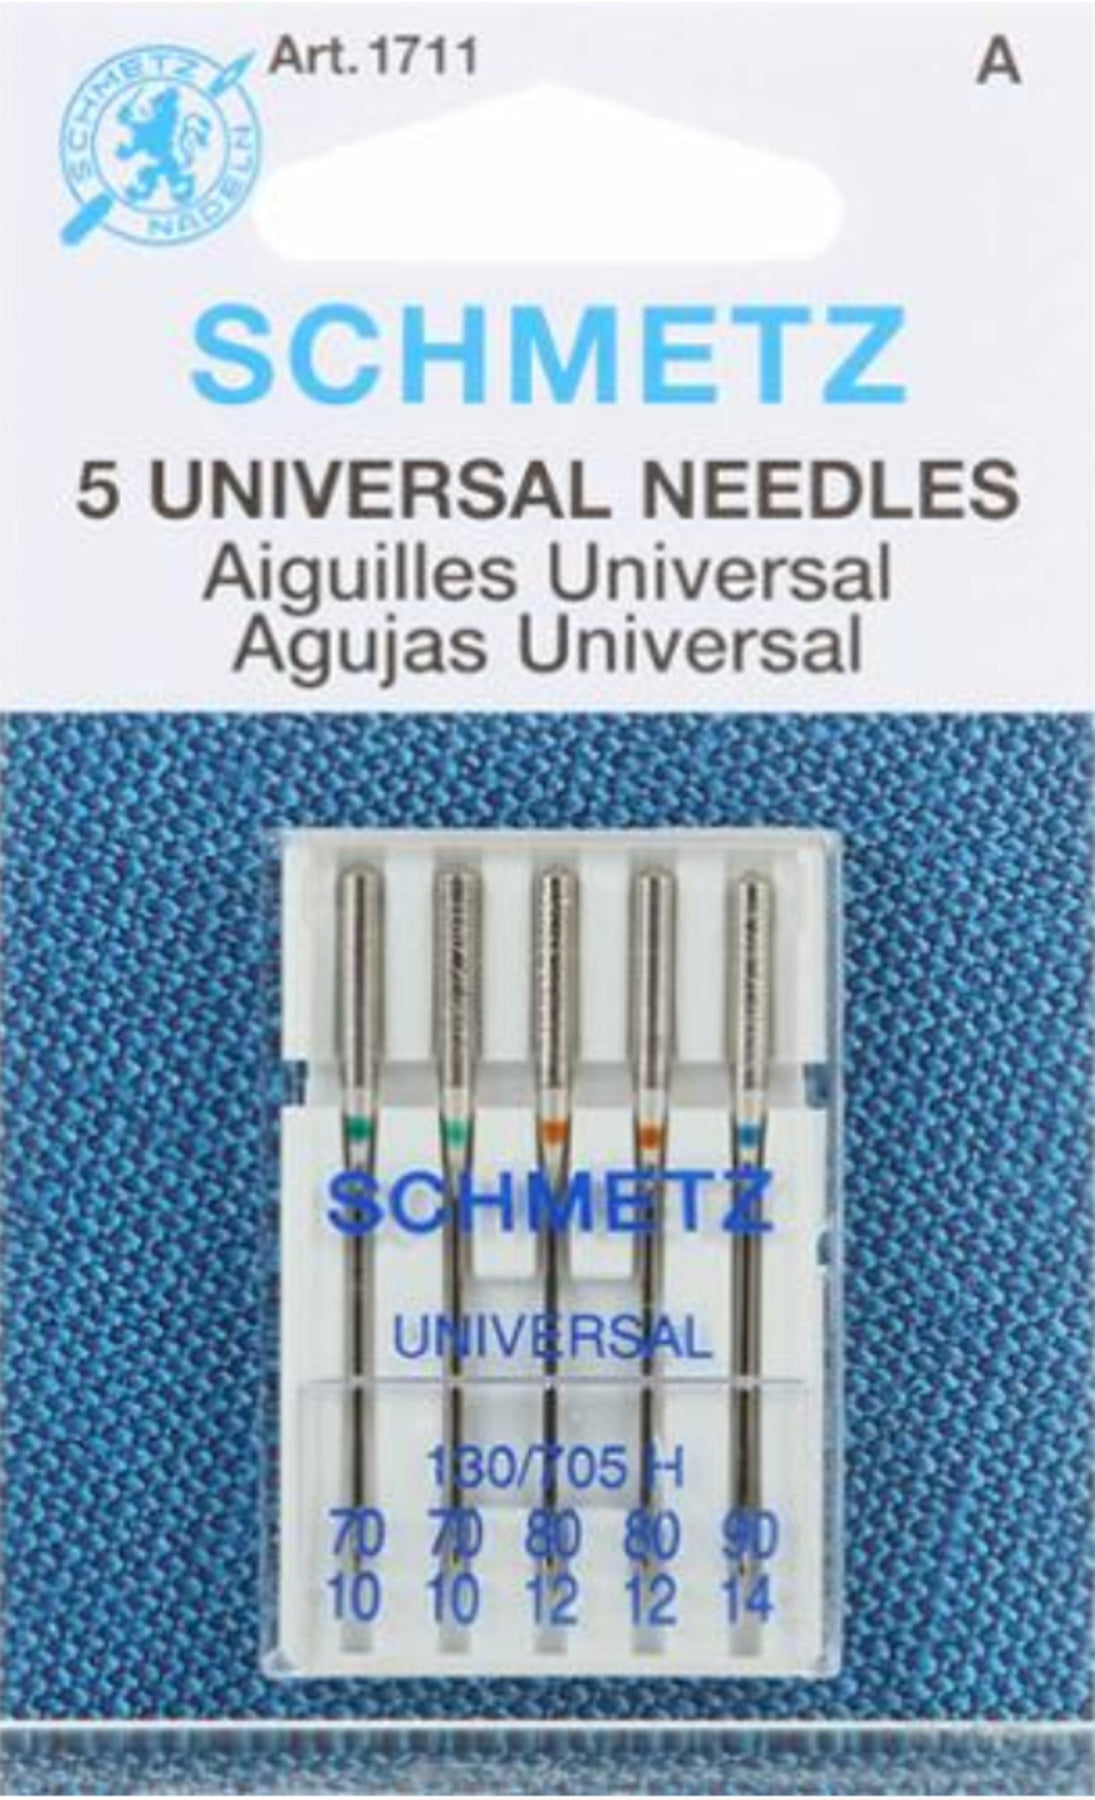 Schmetz Universal Sewing Machine Needles, 10 Count 